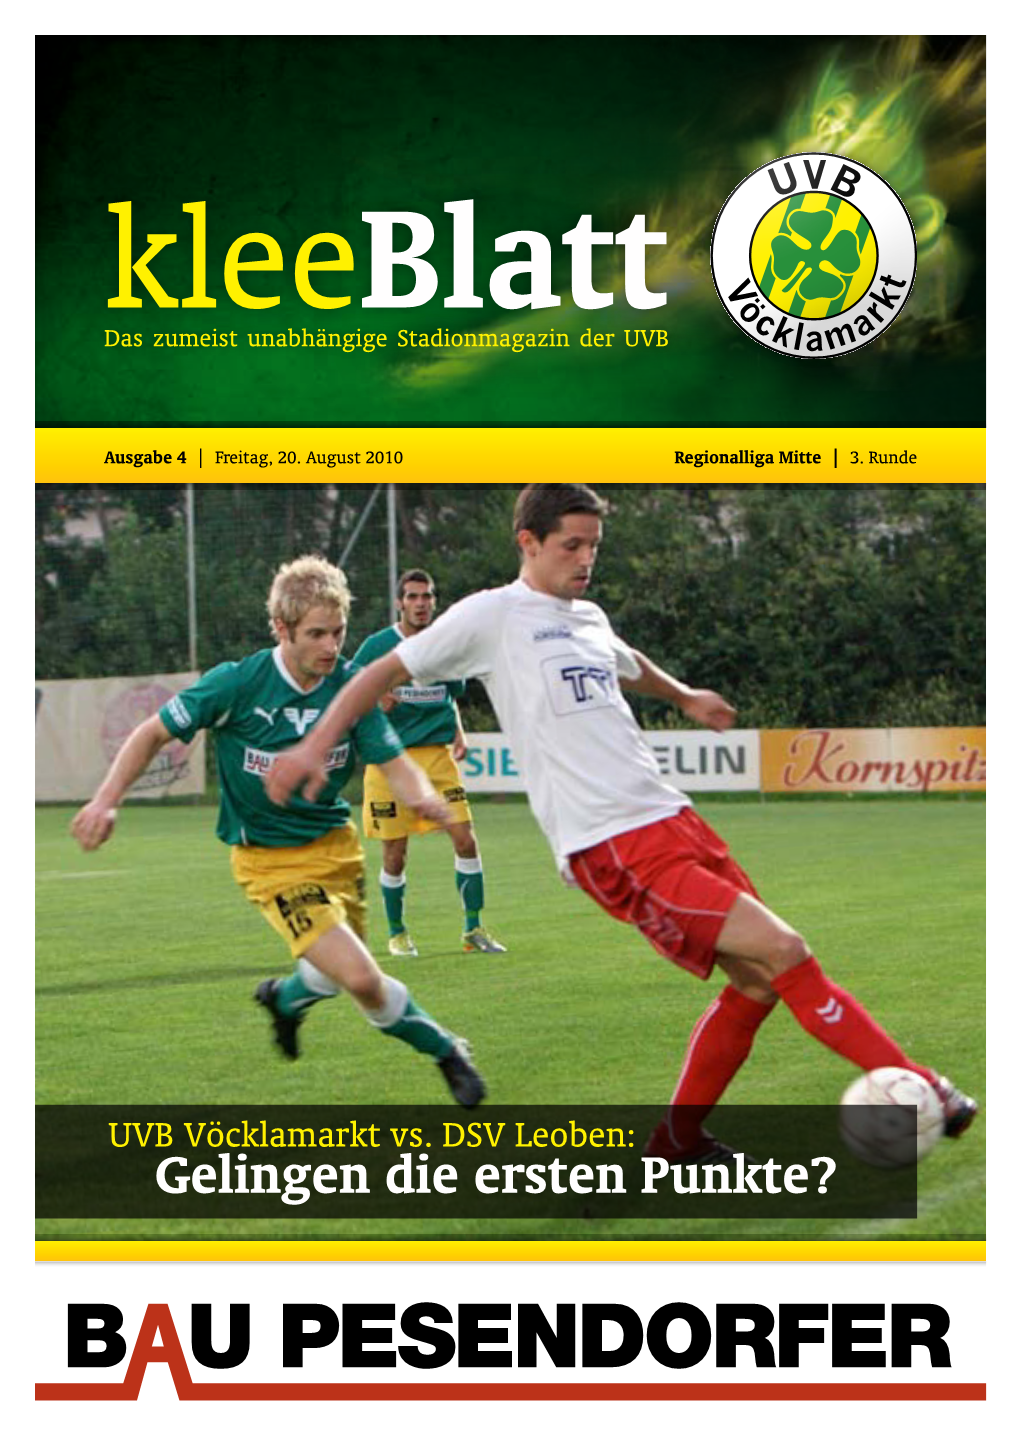 Kleeblatt Das Zumeist Unabhängige Stadionmagazin Der UVB